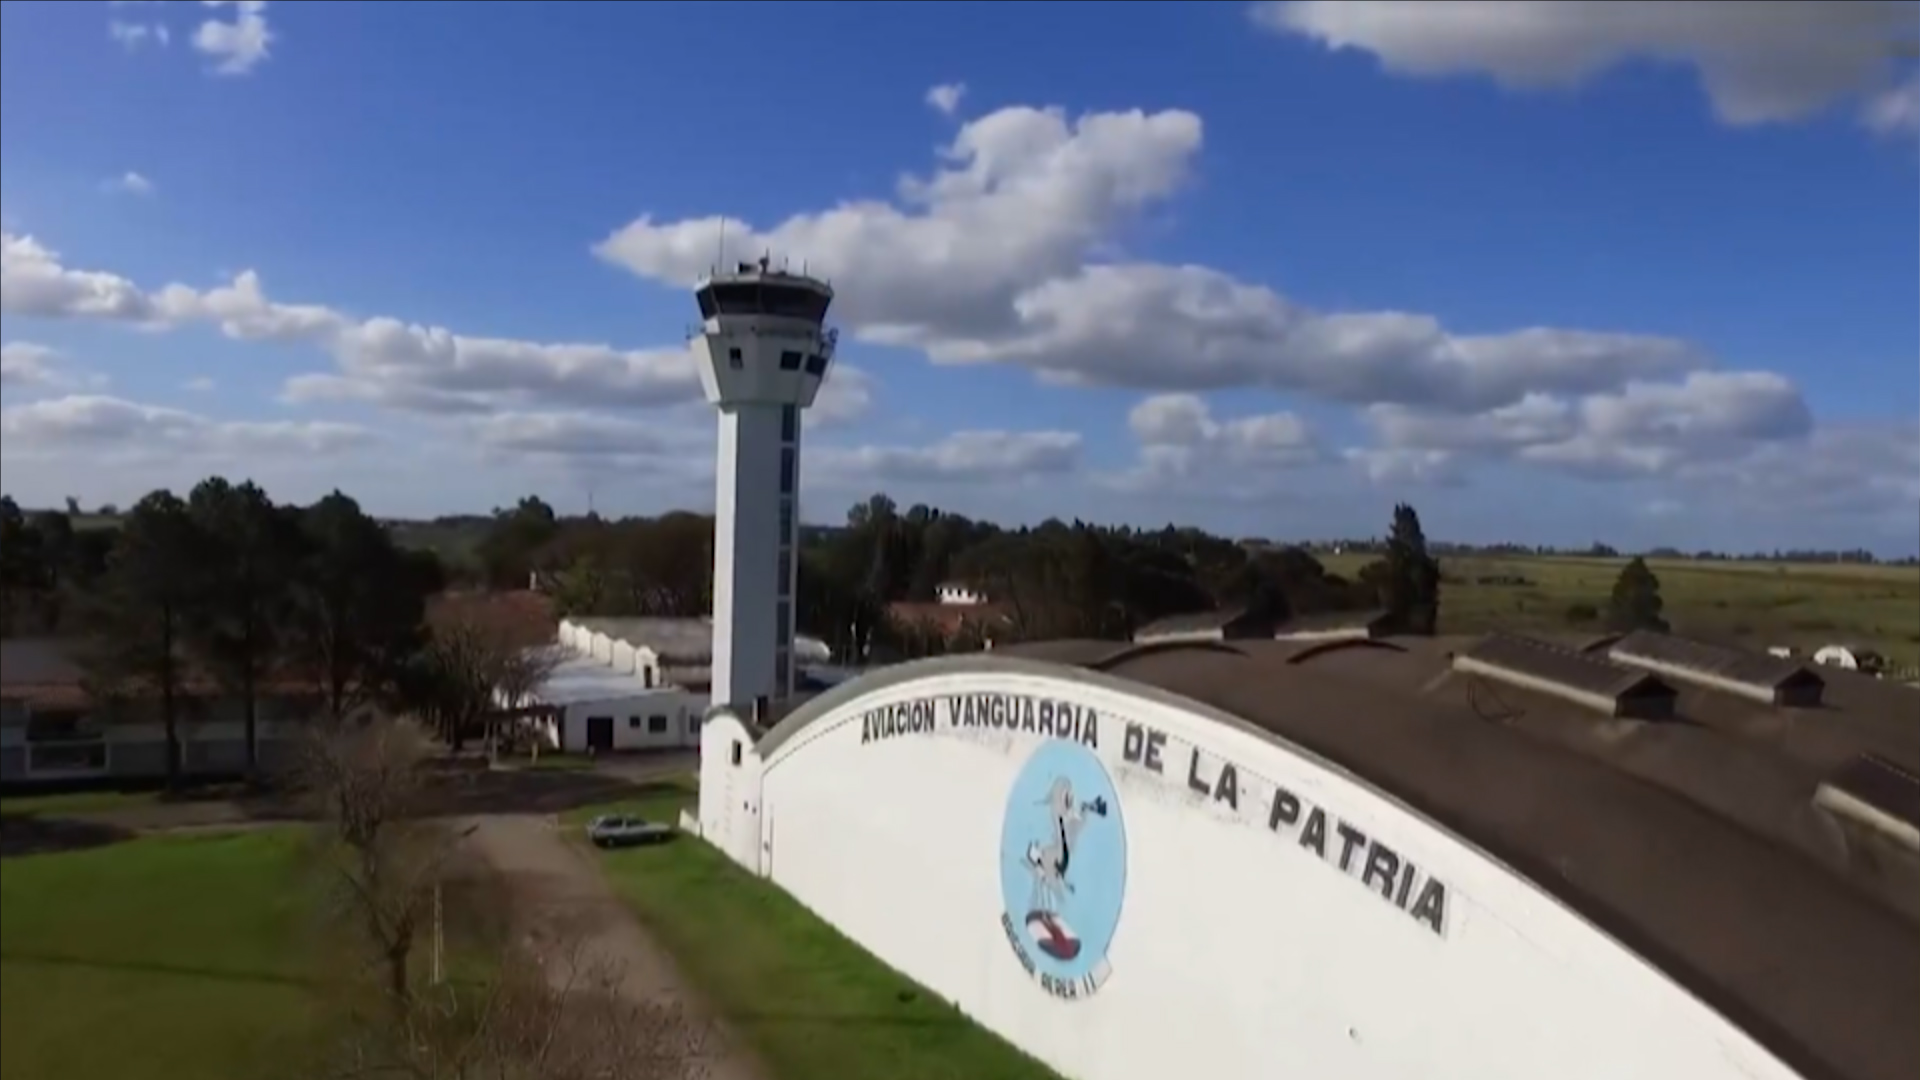 Parceria Estratégica entre Brasil e Uruguai fortalece o Gerenciamento de Fluxo de Tráfego Aéreo na América do Sul